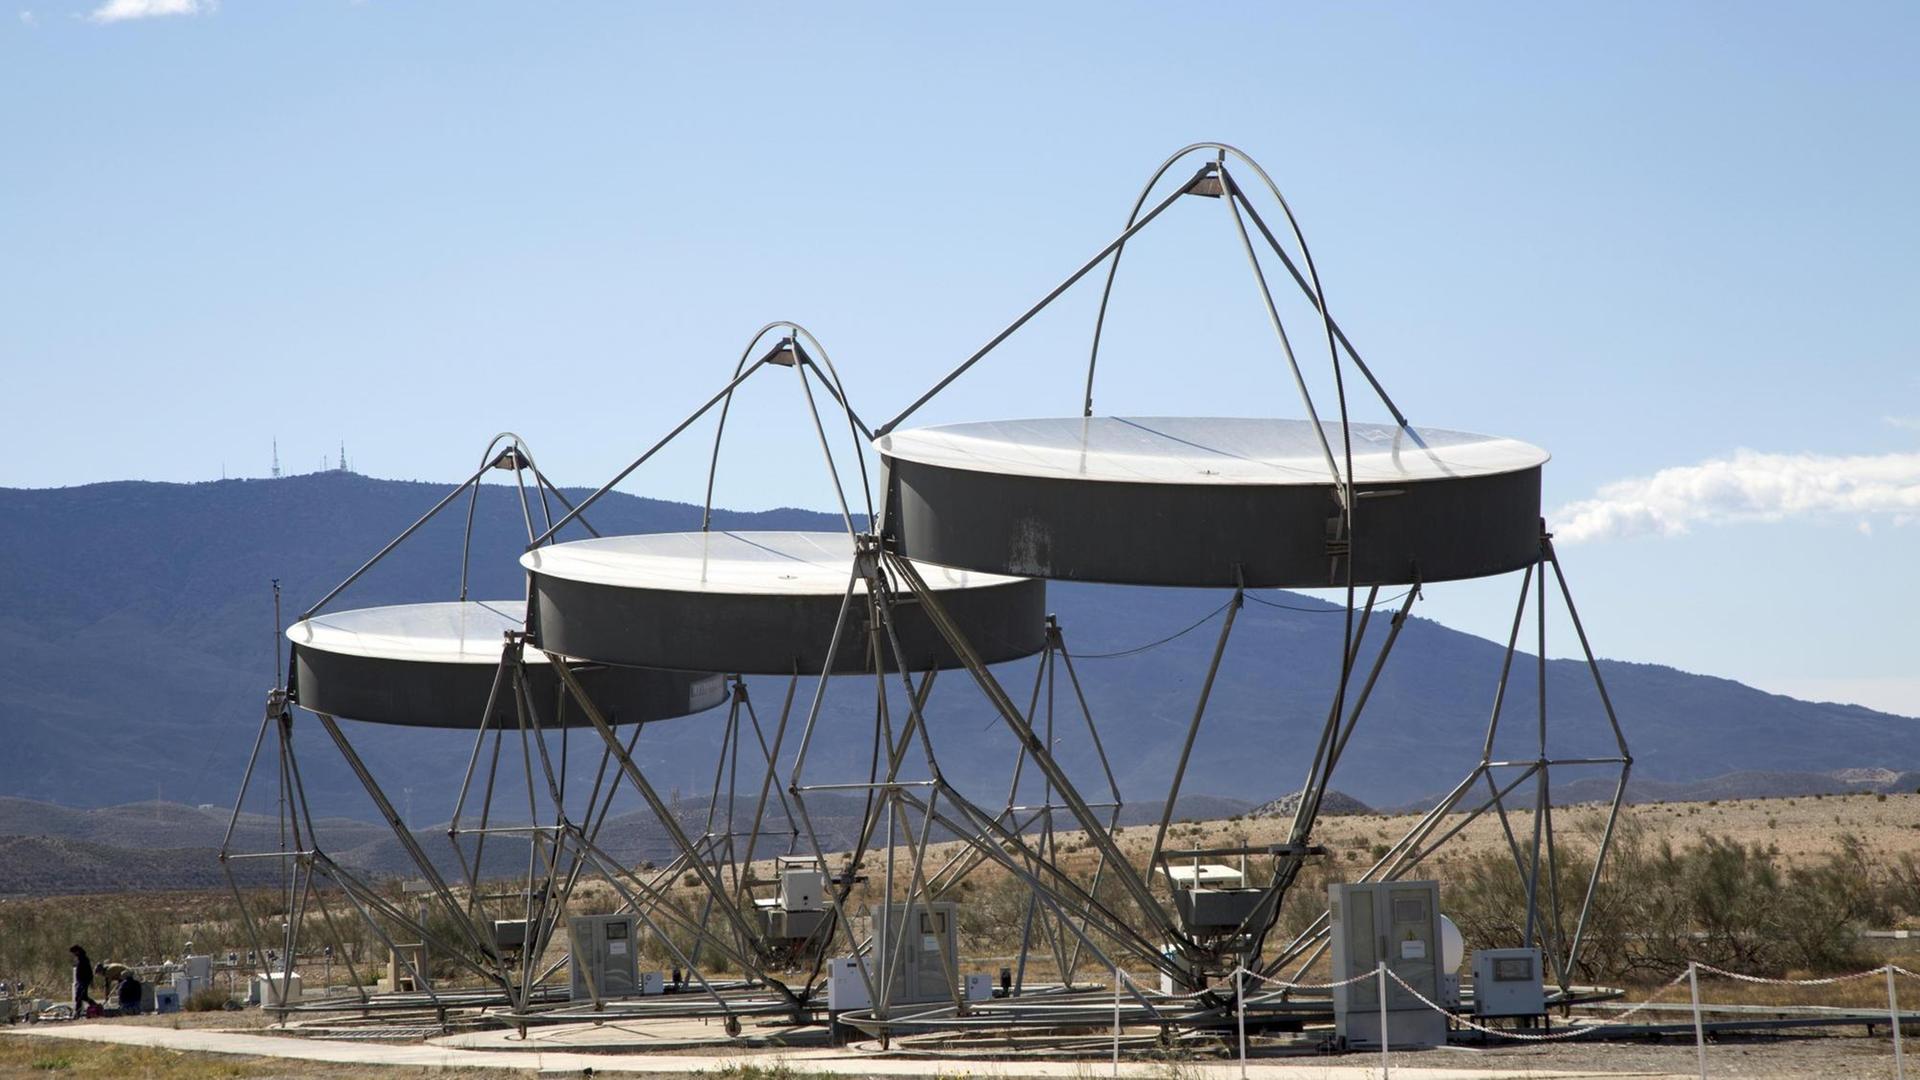 Parabolspiegel, Zentrum zur Erforschung der Sonnenenergie, Plataforma Solar de Almería, Wüste von Tabernas, Provinz Almería, Andalusien, Spanien